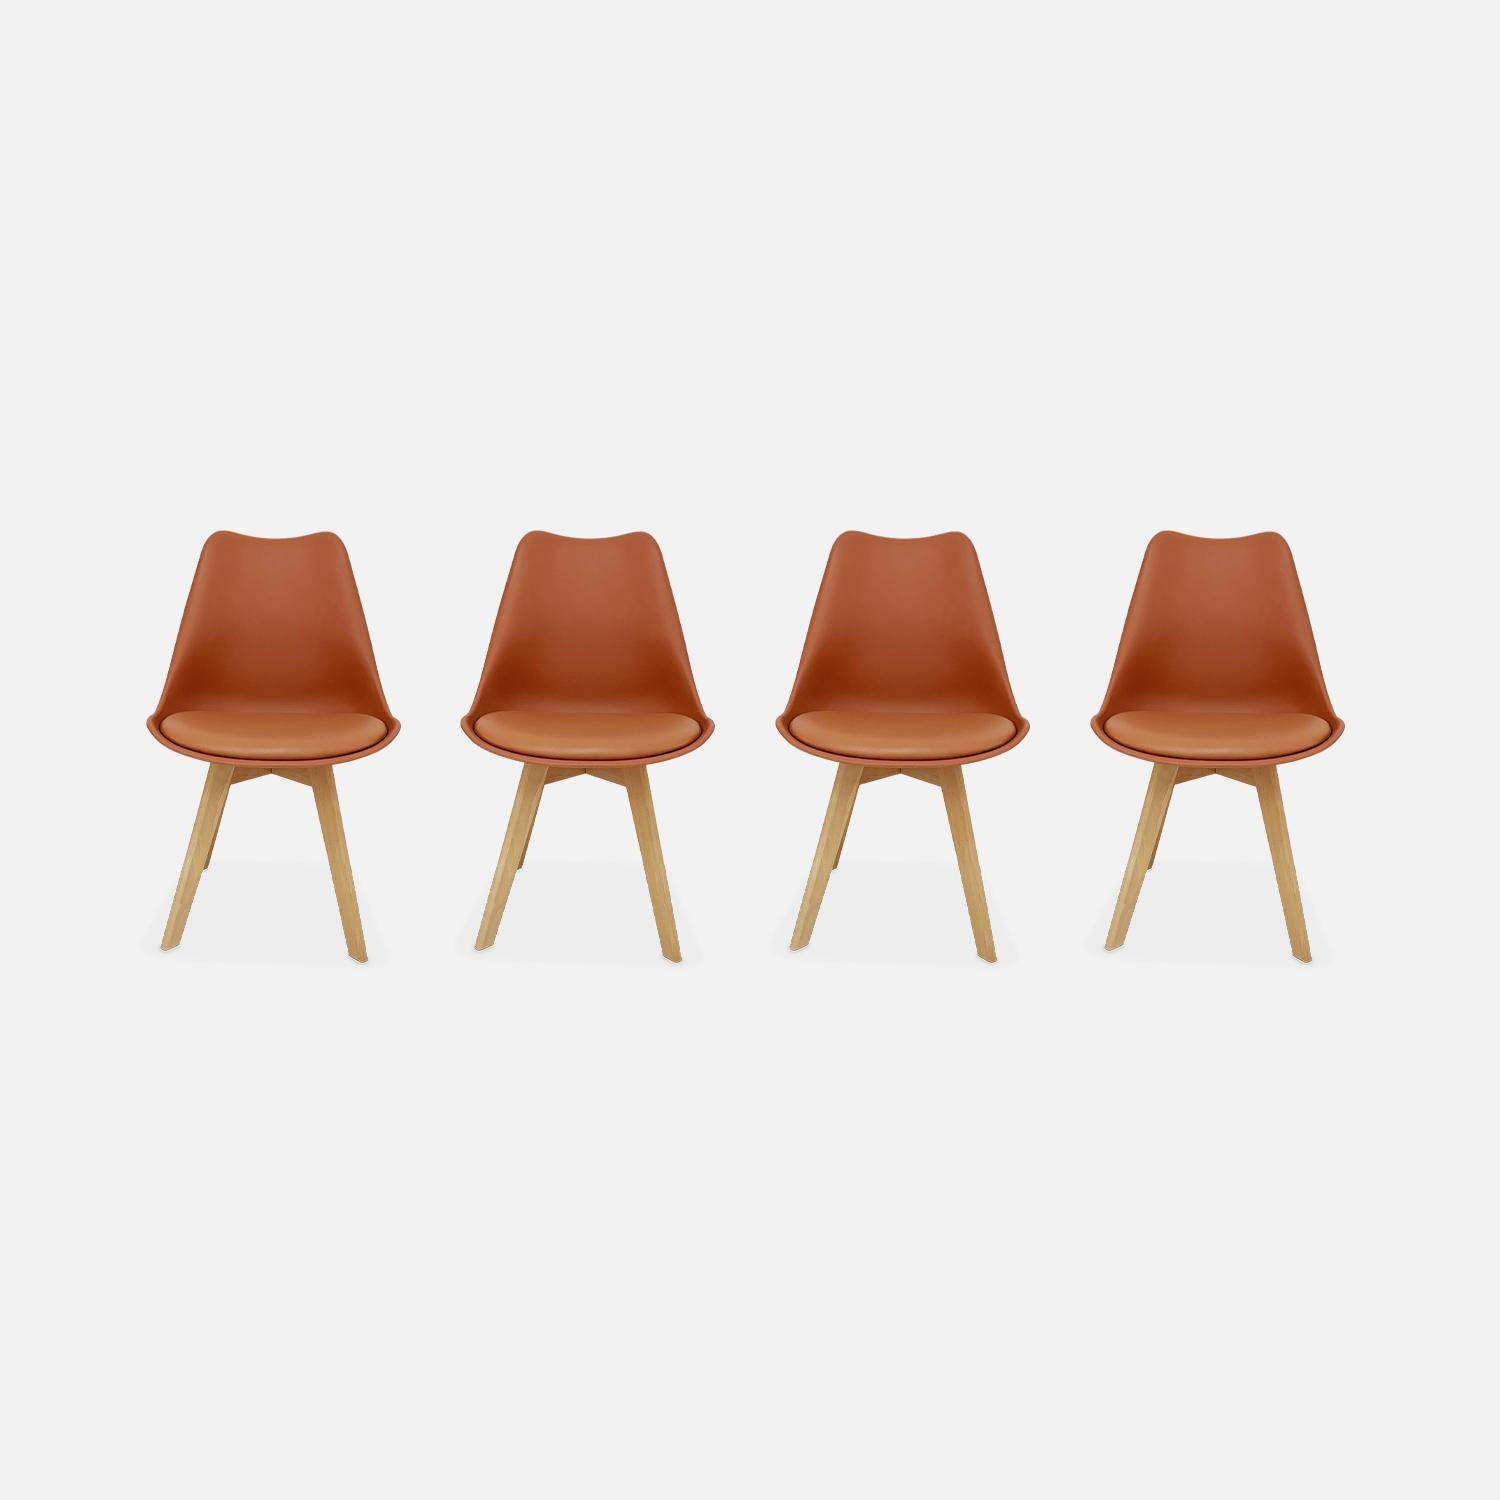 Conjunto de 4 sillas escandinavas, patas de madera de haya, asientos individuales, terracota Photo4